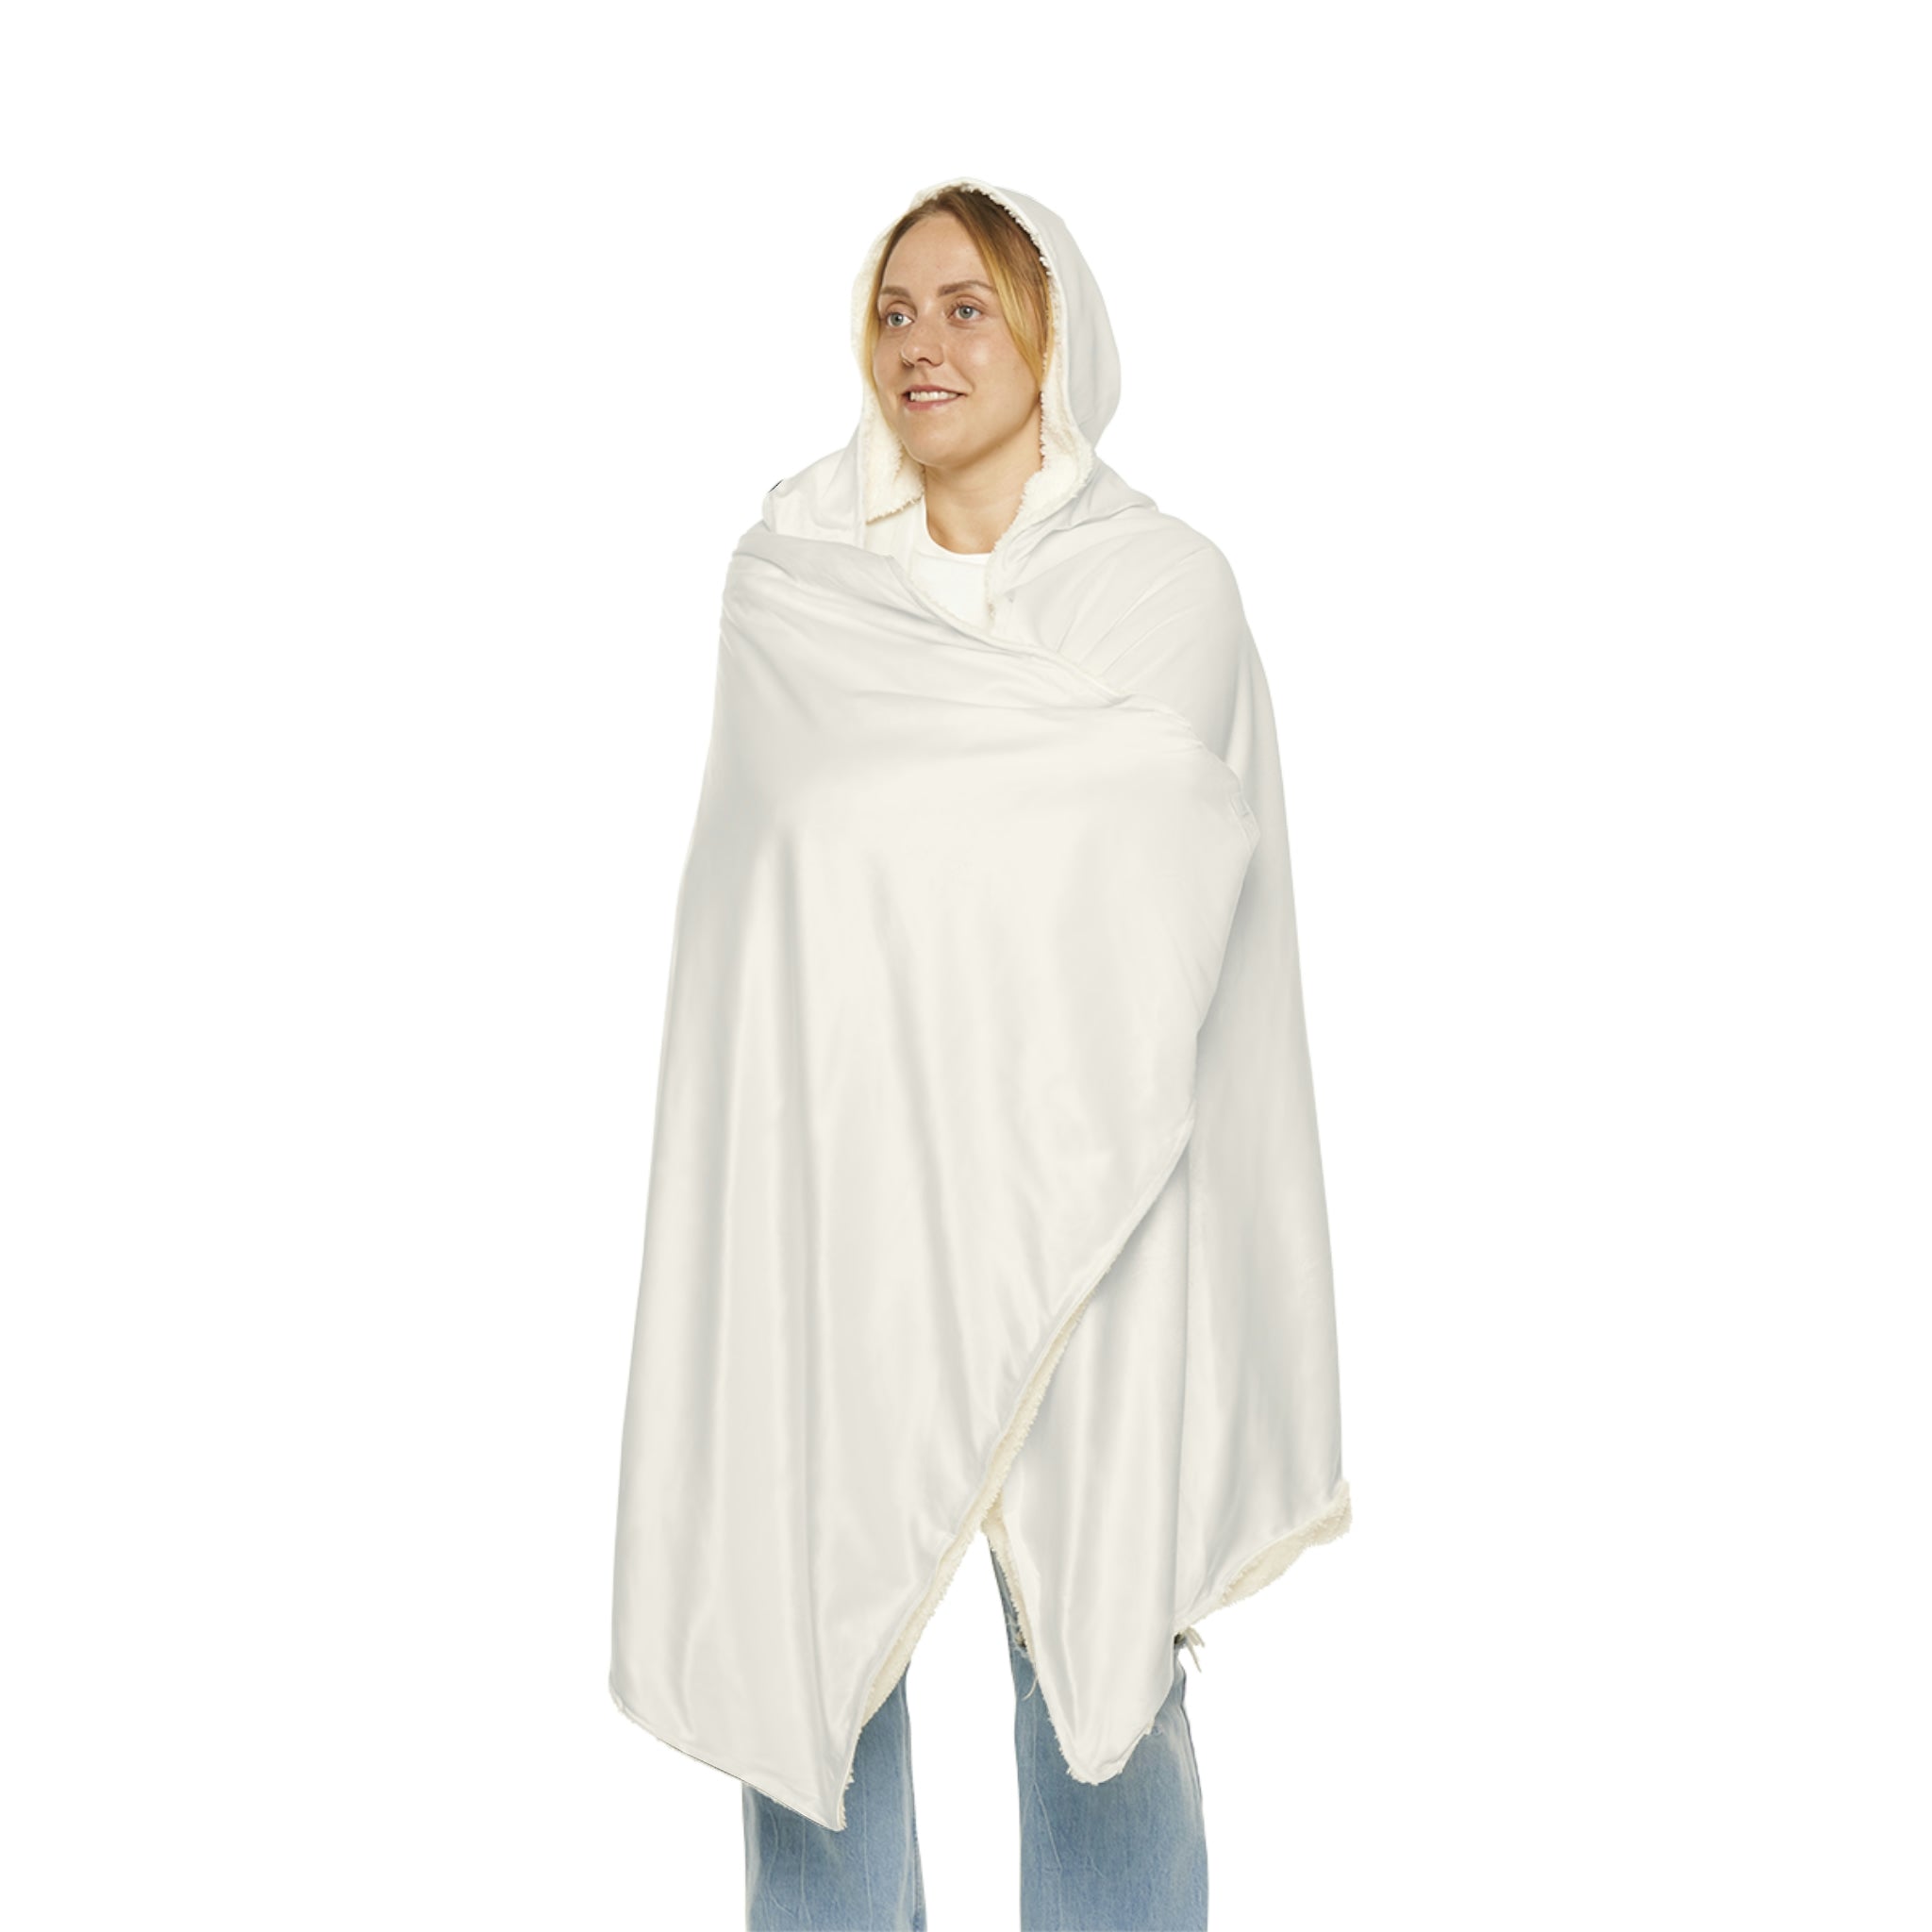 Snuggle Blanket